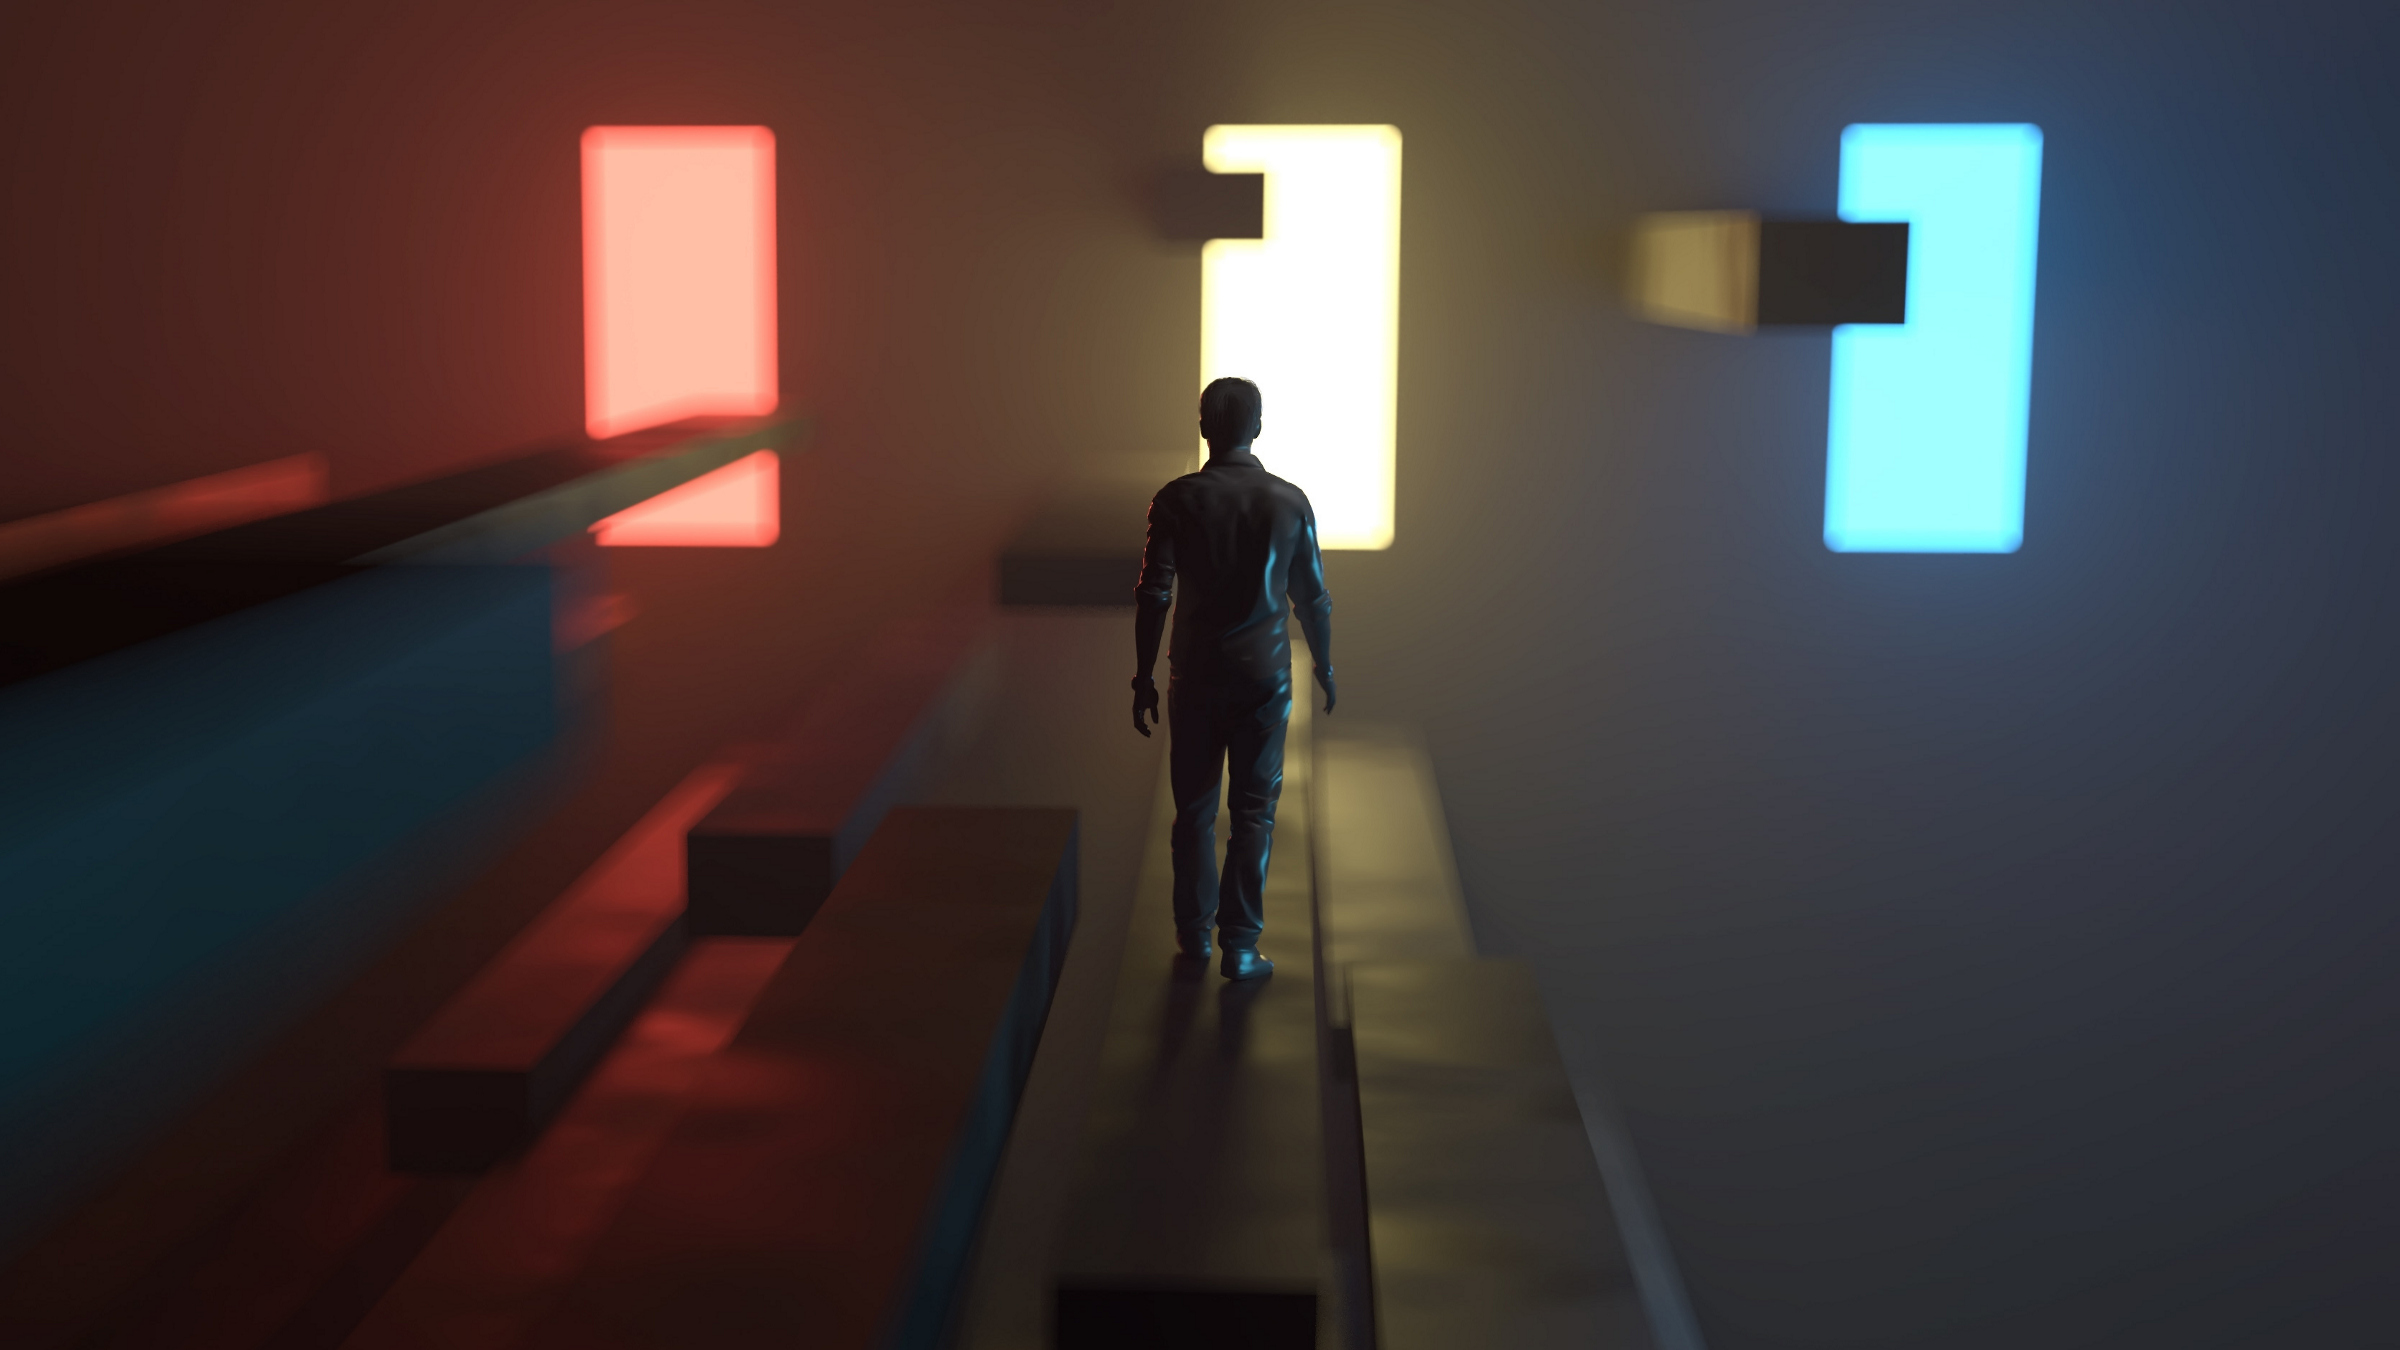 person walking towards three door-shaped blocks of light, illustration